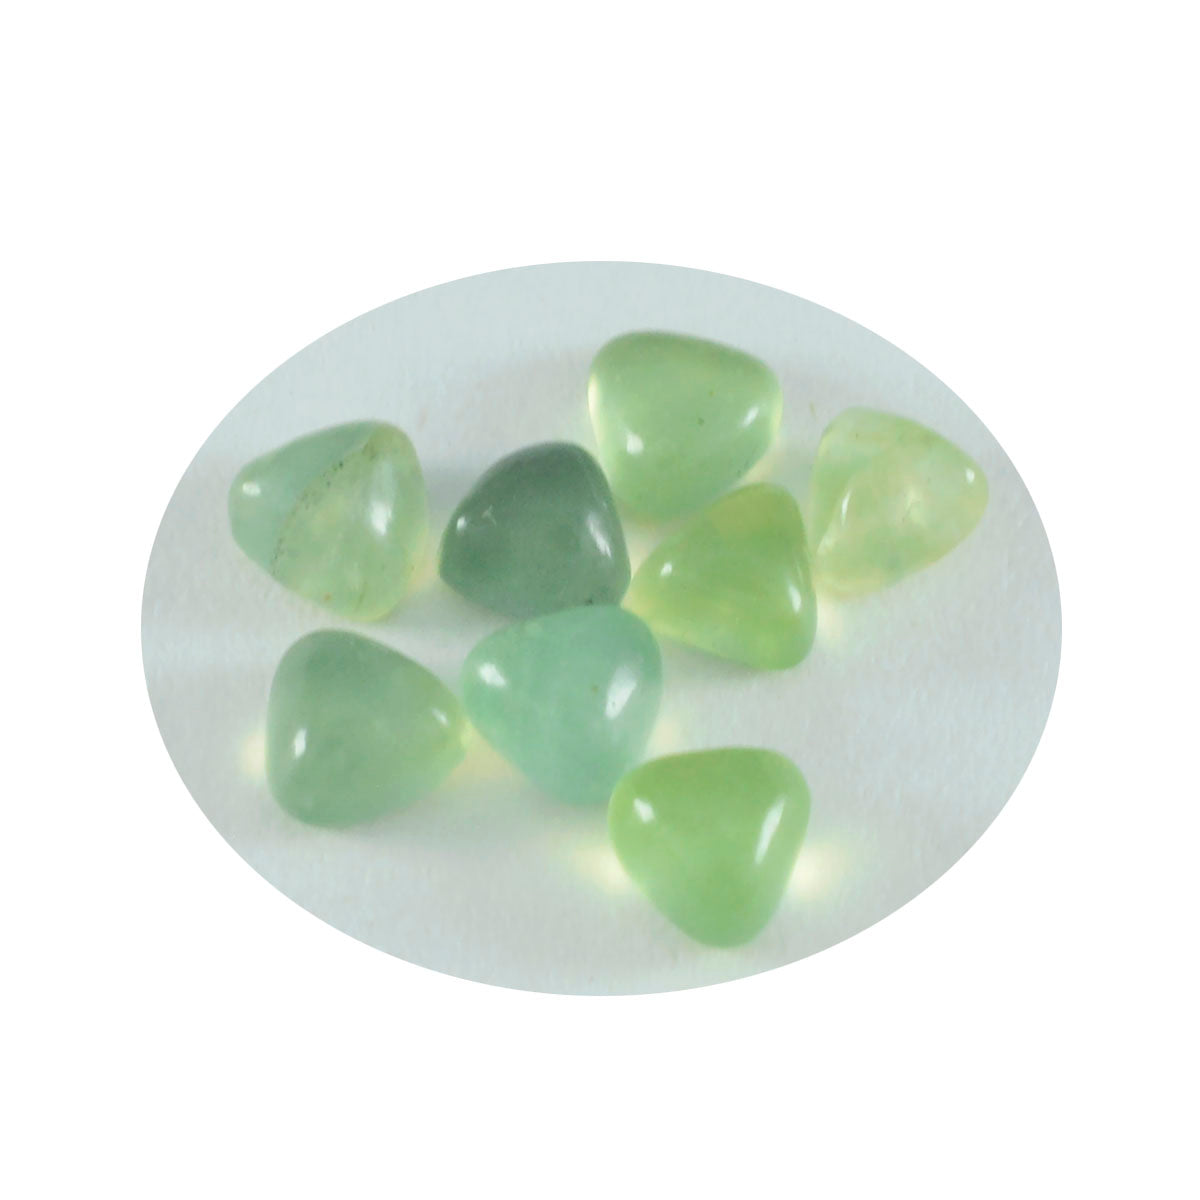 riyogems 1 шт. зеленый пренит кабошон 10x10 мм форма триллион драгоценный камень отличного качества